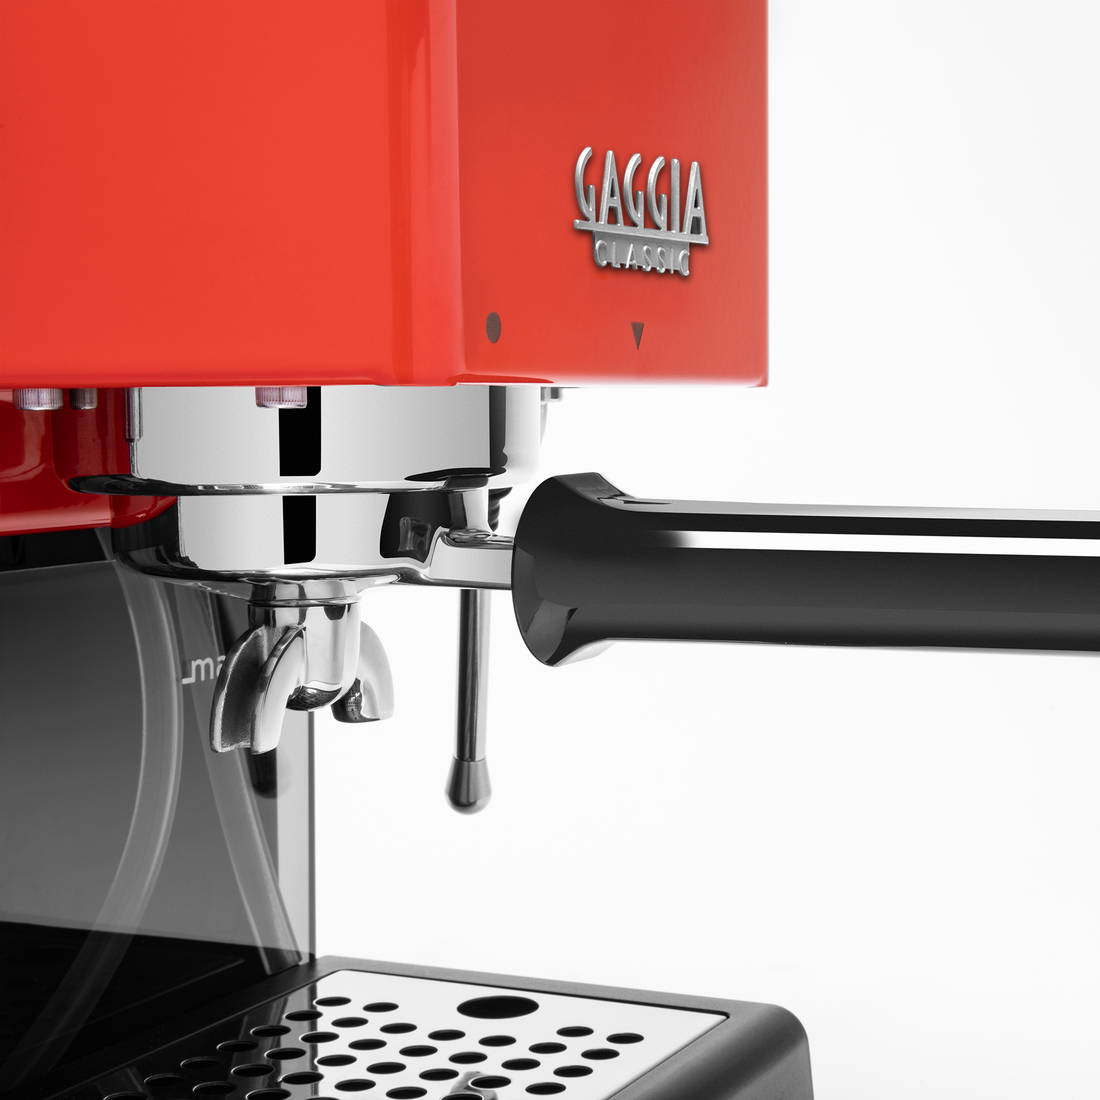 Gaggia Classic Evo Pro Espresso Machine in Lobster Red with Walnut